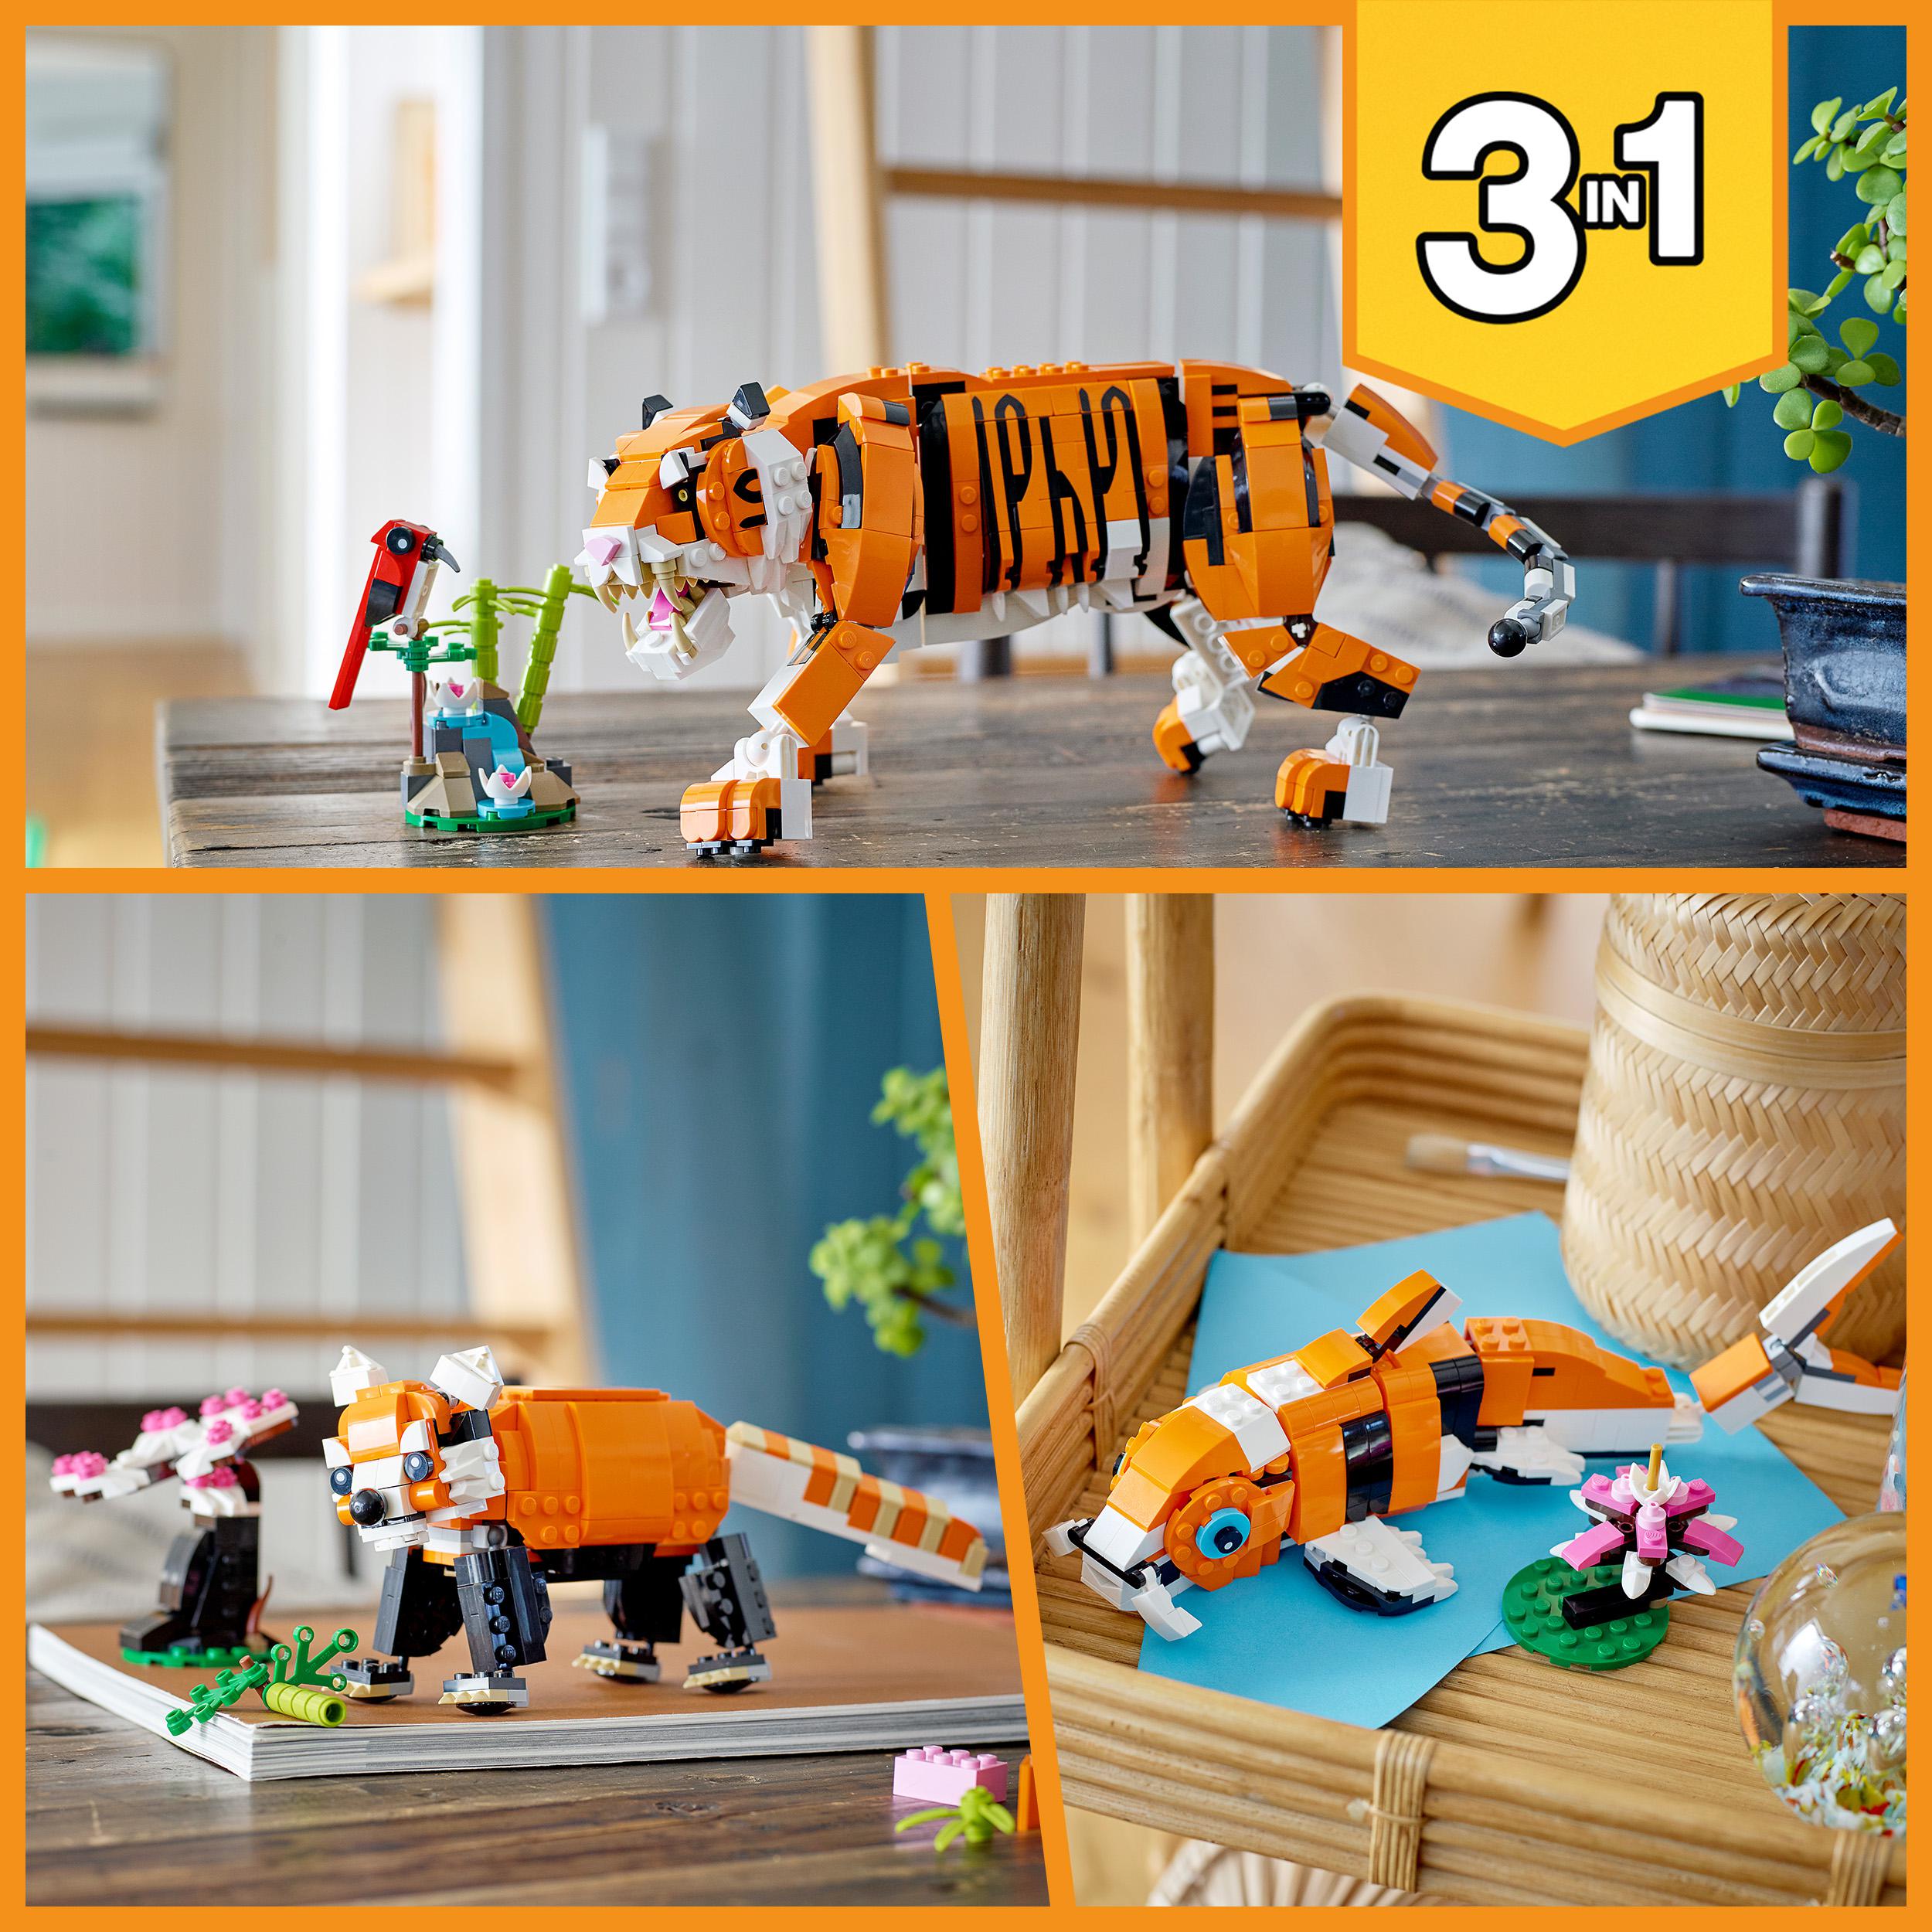 LEGO Creator 3 in 1 Tigre Maestosa, Si Trasforma in Panda o Pesce, Giocattolo Cr 31129, , large